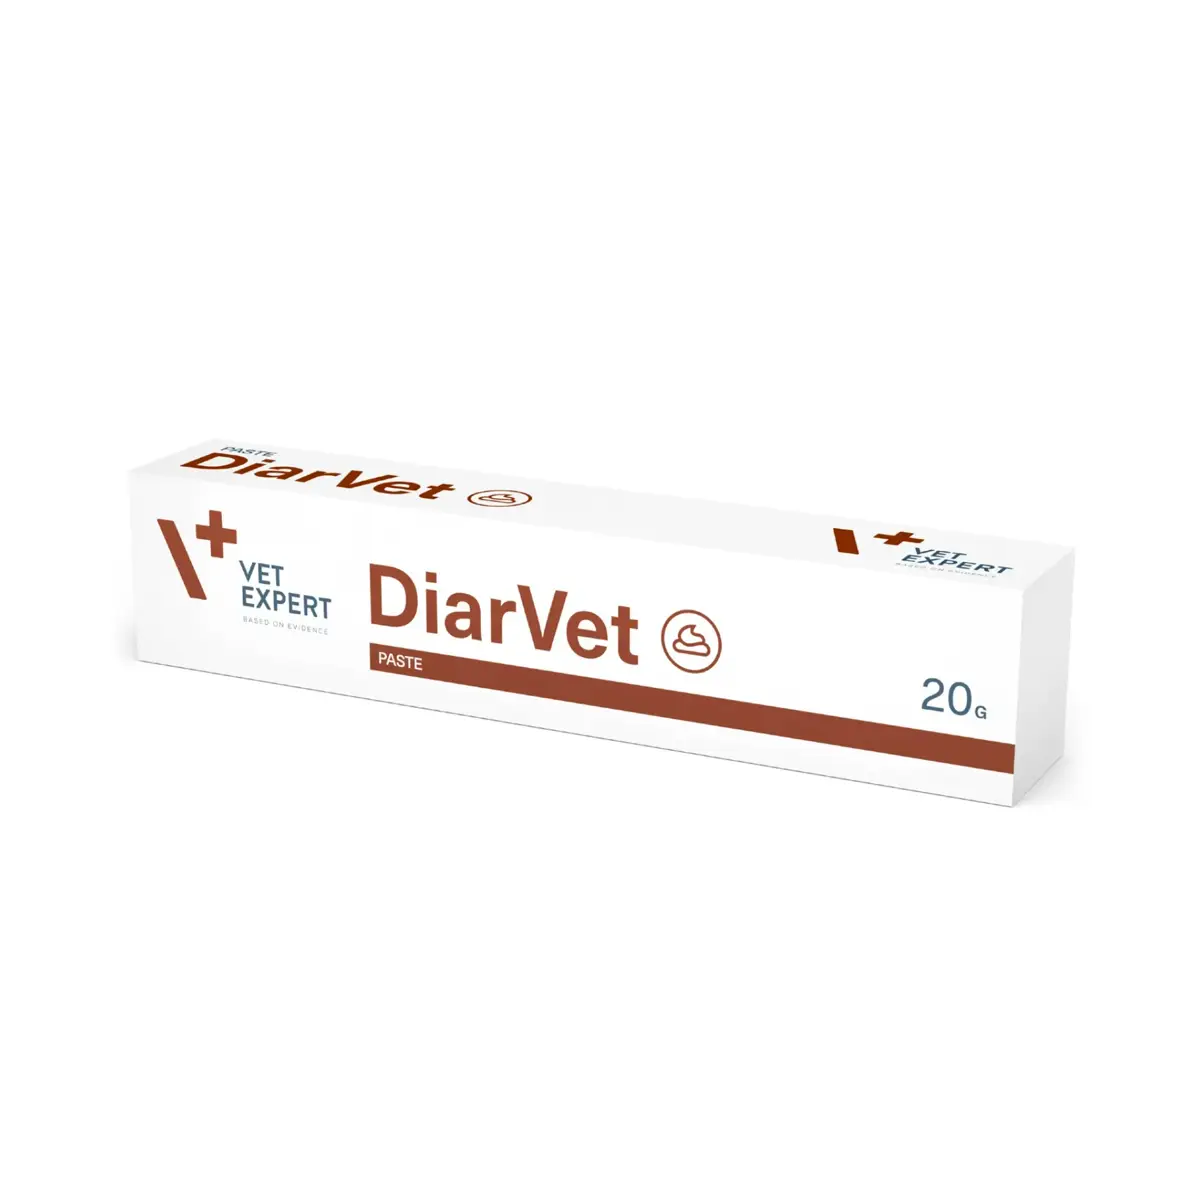 Vet Expert DiarVet (Diarrhea Supplement For Dogs & Cats) Paste 20 G